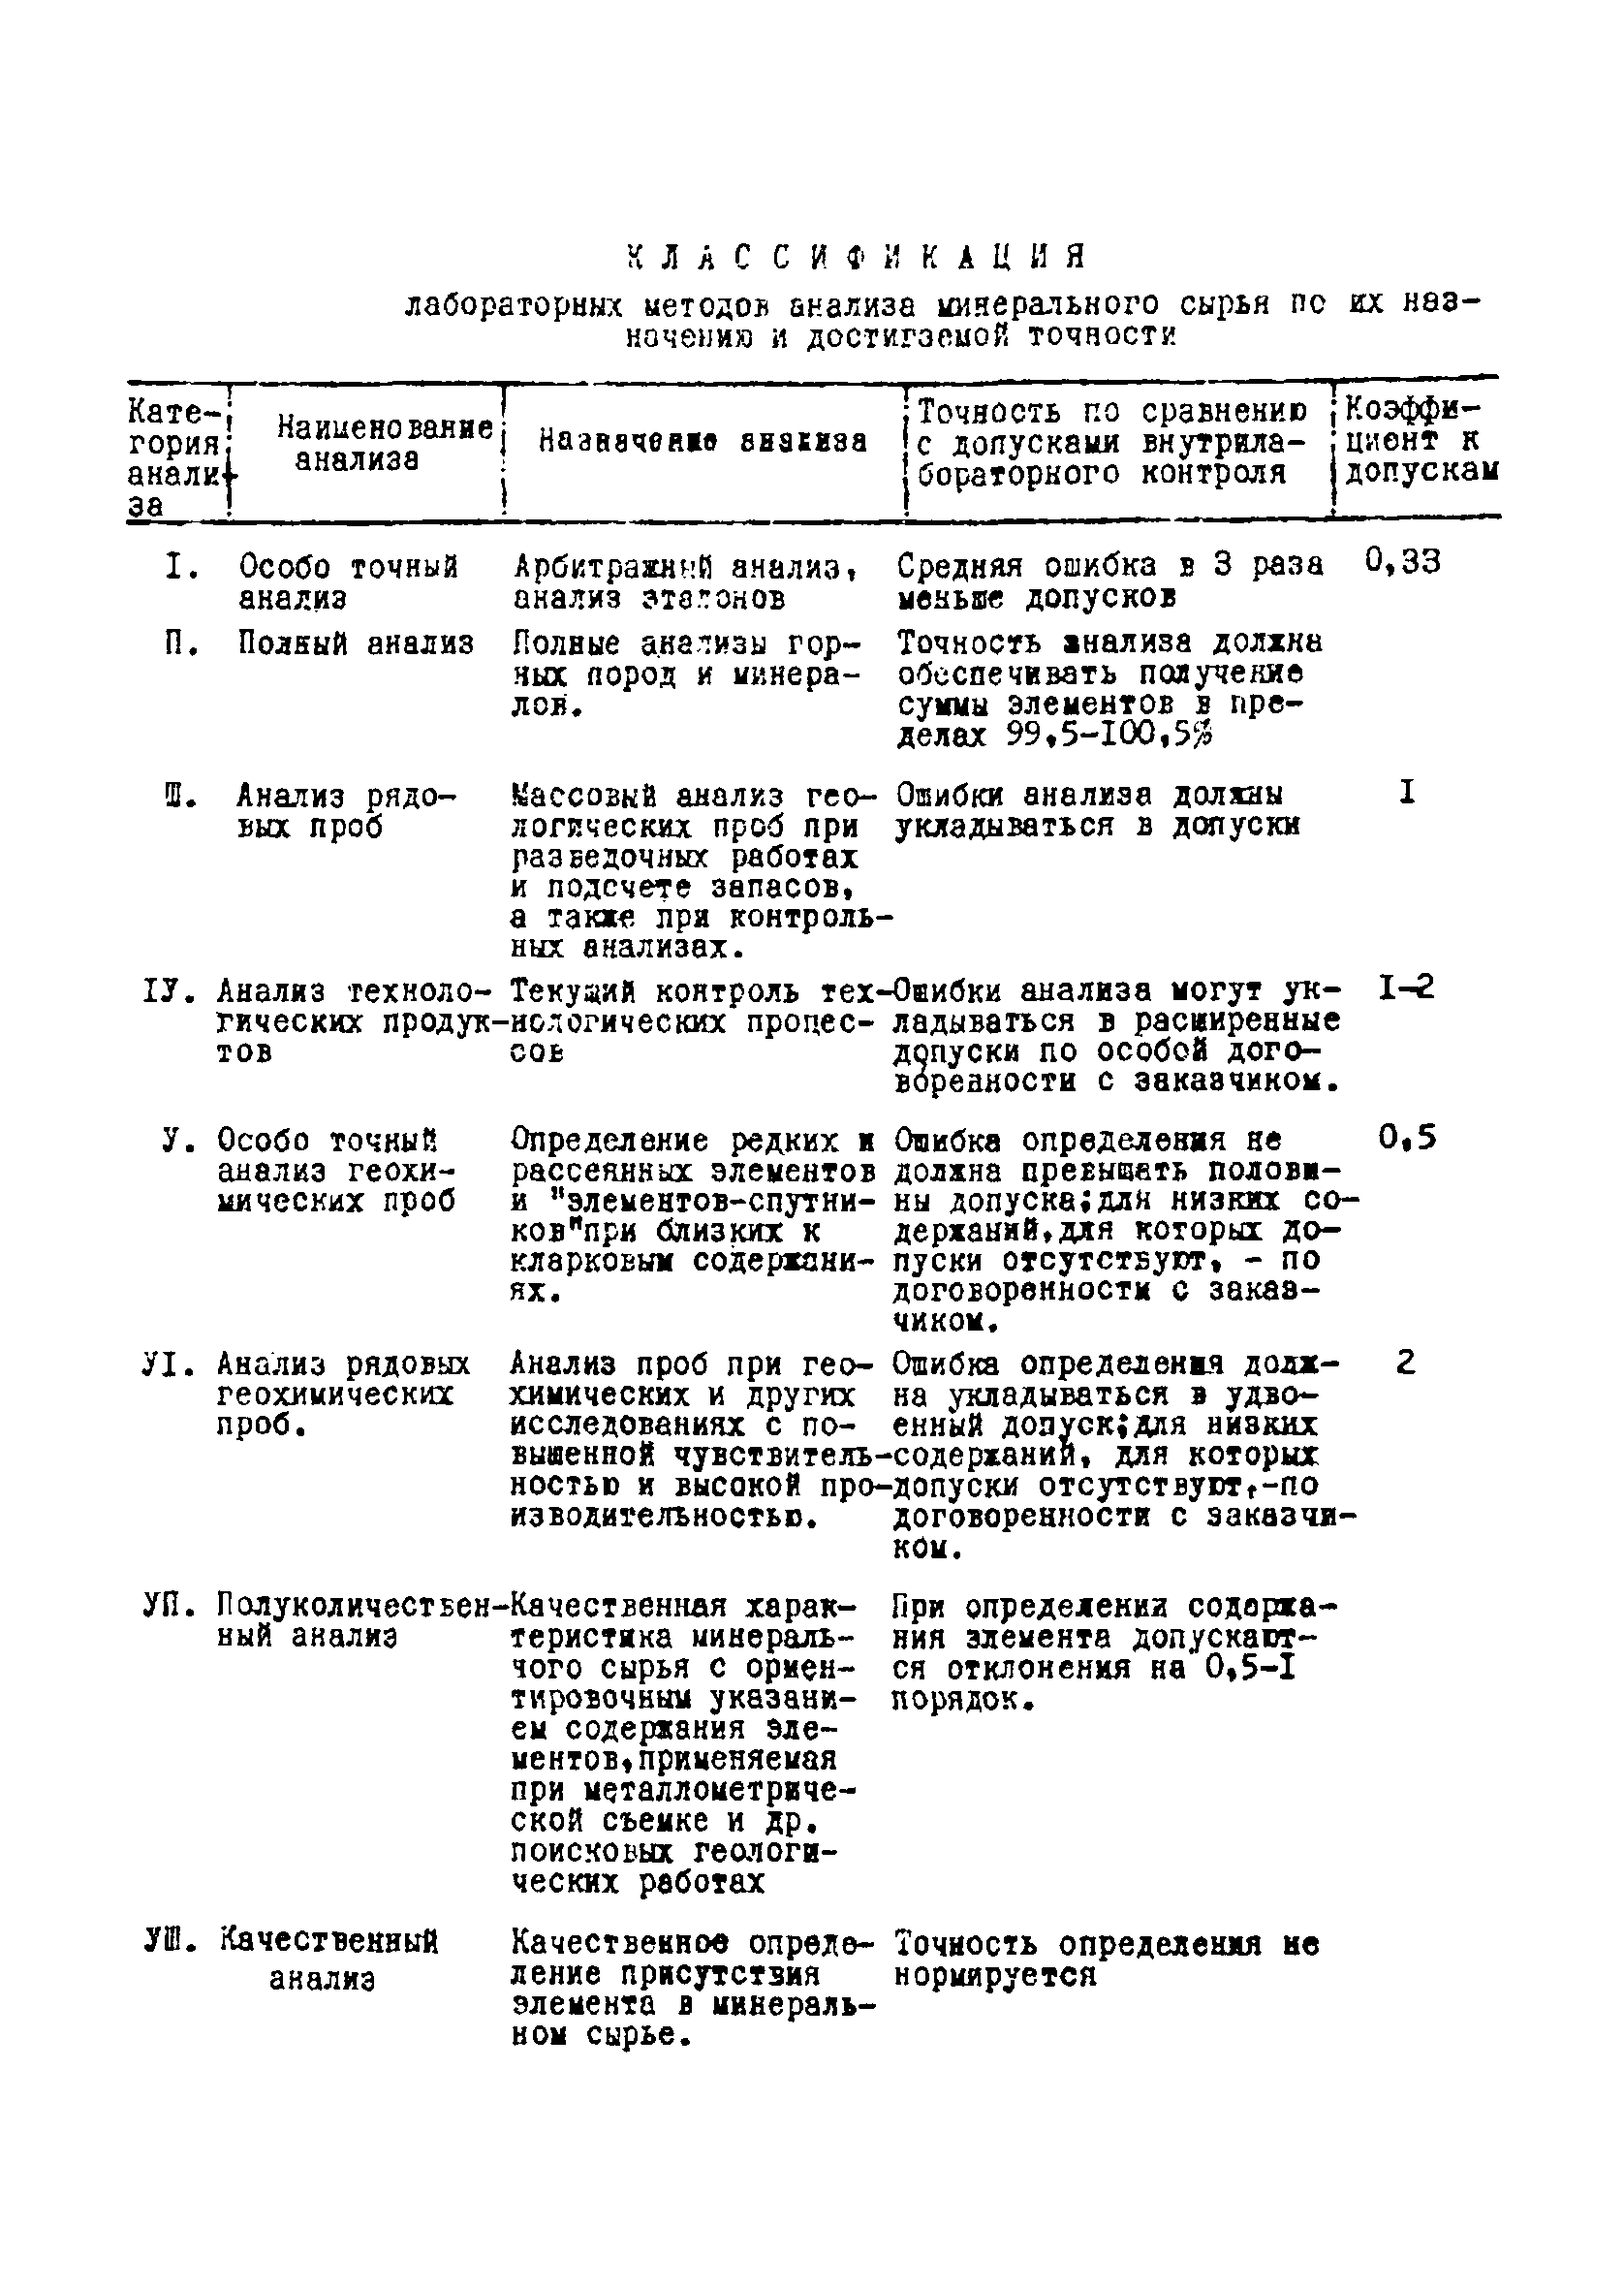 Инструкция НСАМ 74-РС